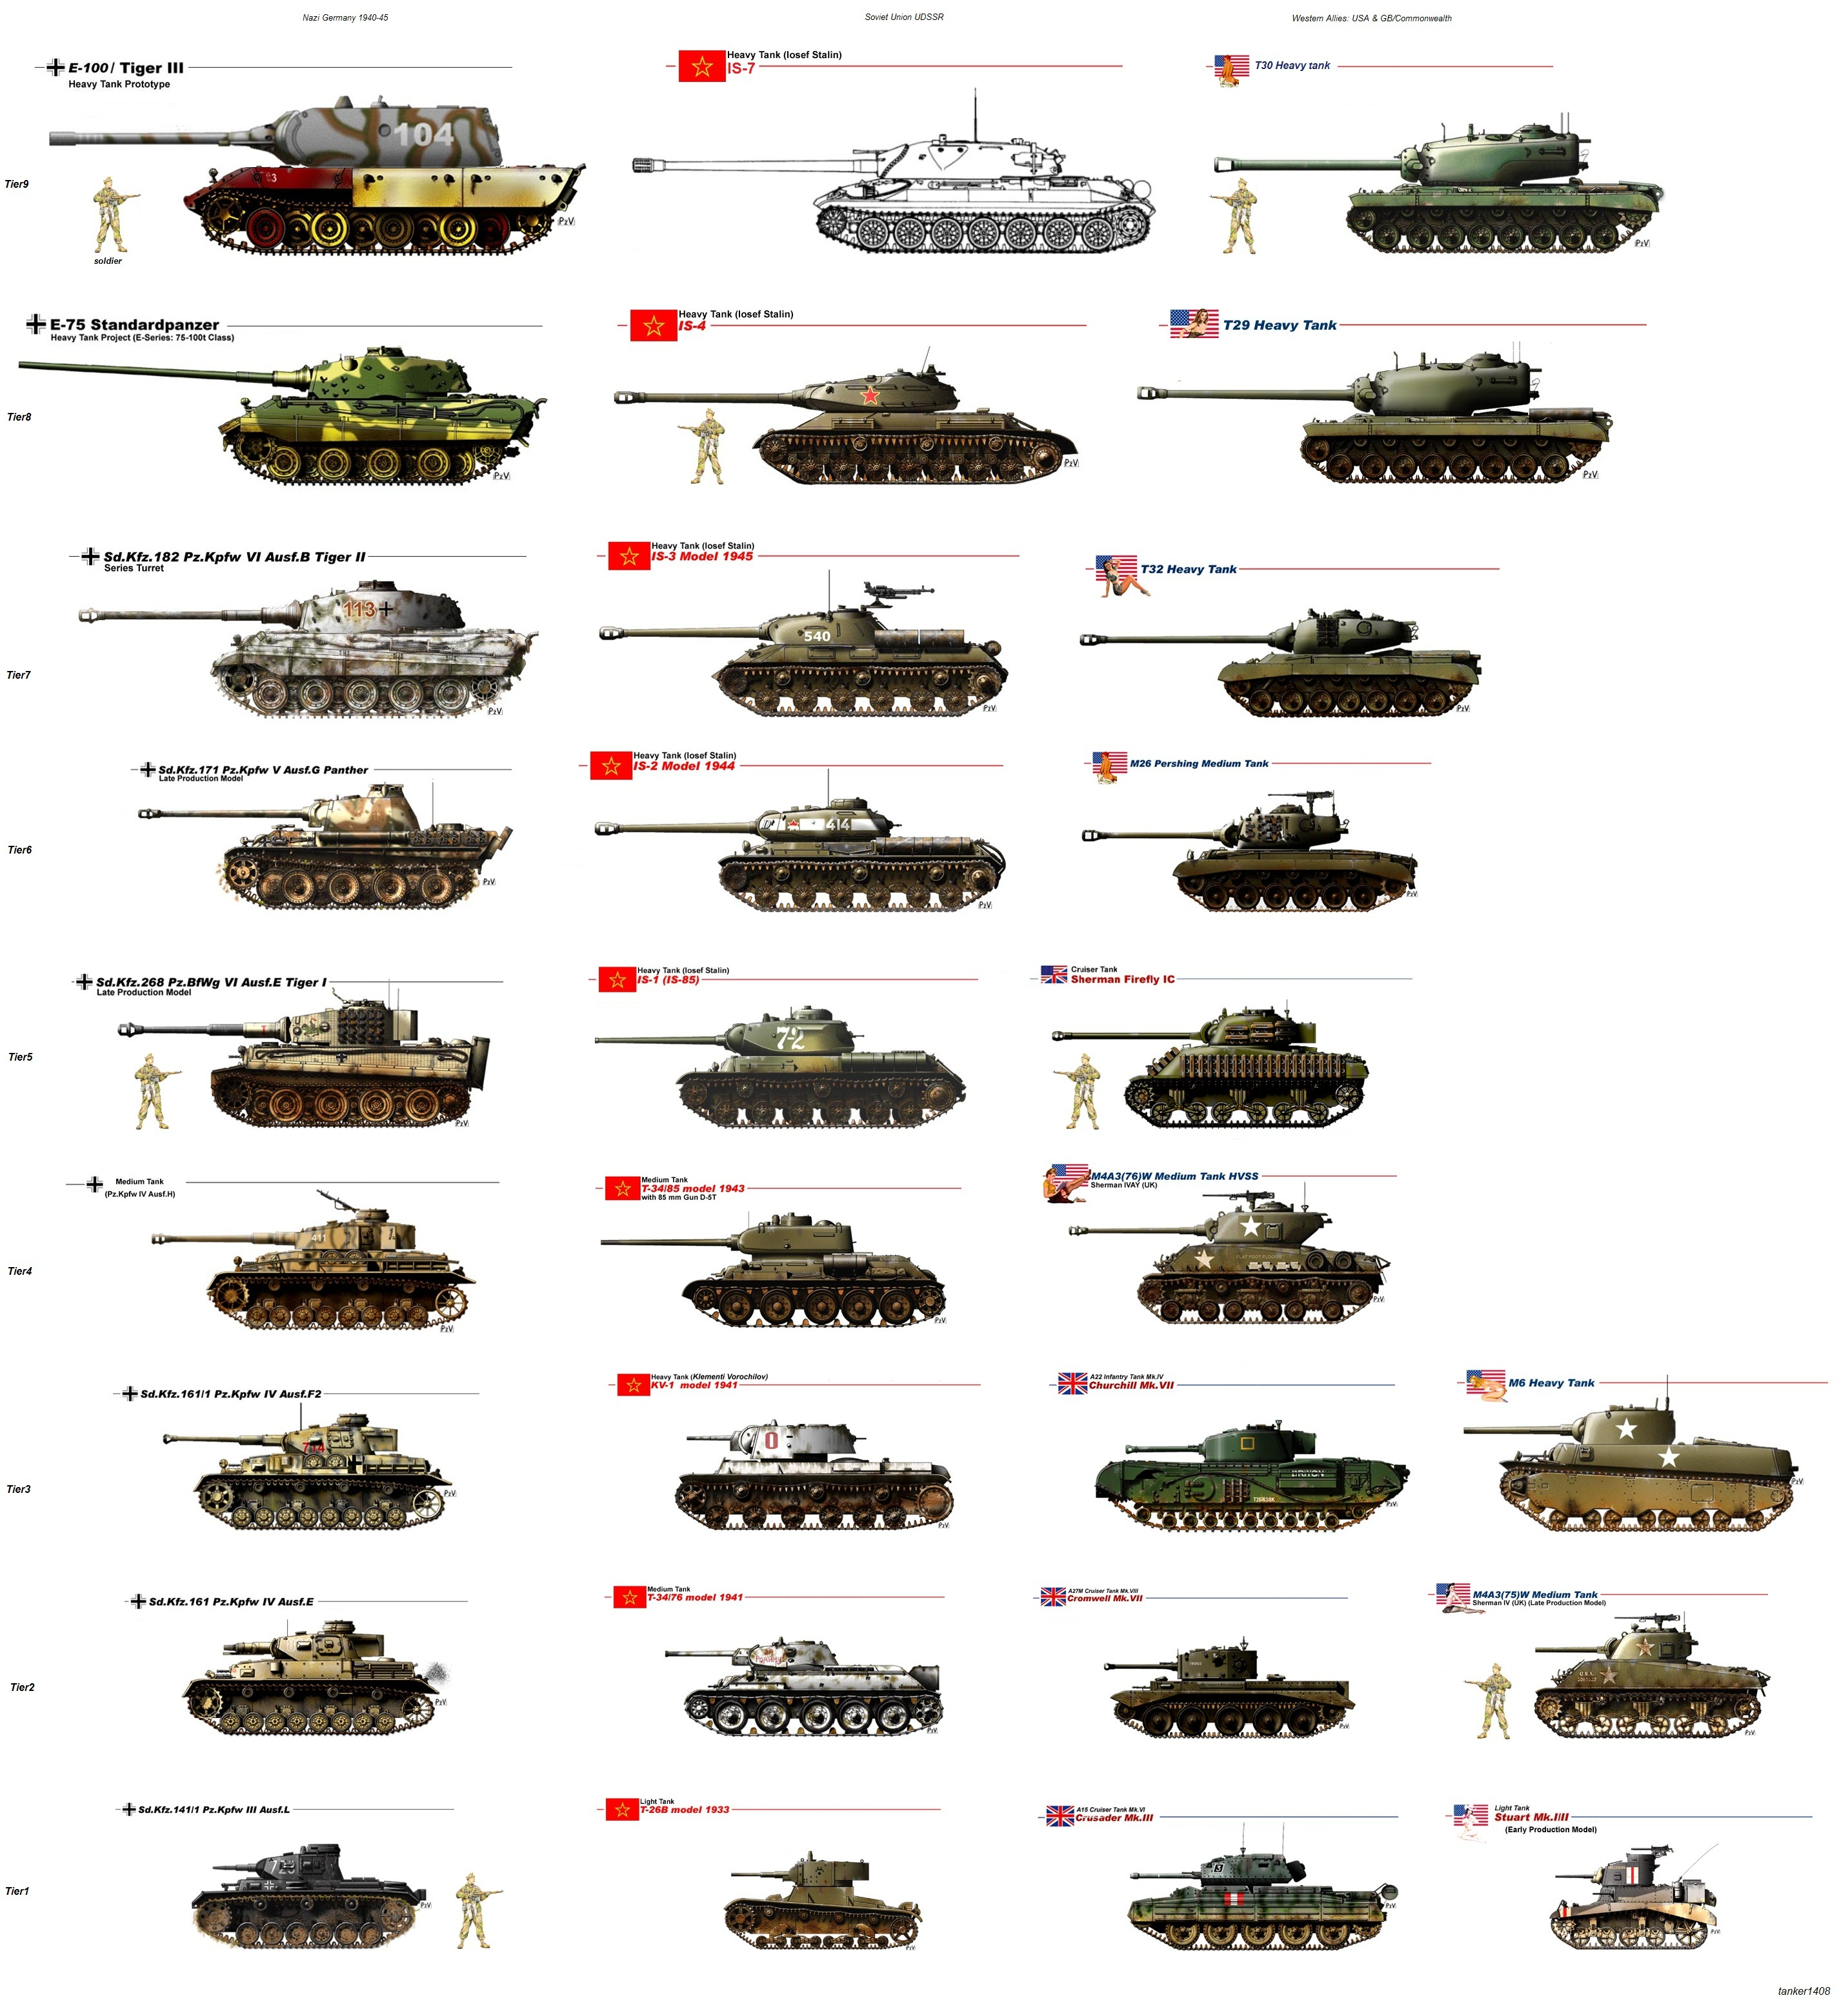 Название английского танка. Танки вид сбоку и название. Таблица танков ВМВ сбоку. Эволюция бронетехники Германии второй мировой войны. Танки второй мировой войны вид сбоку.